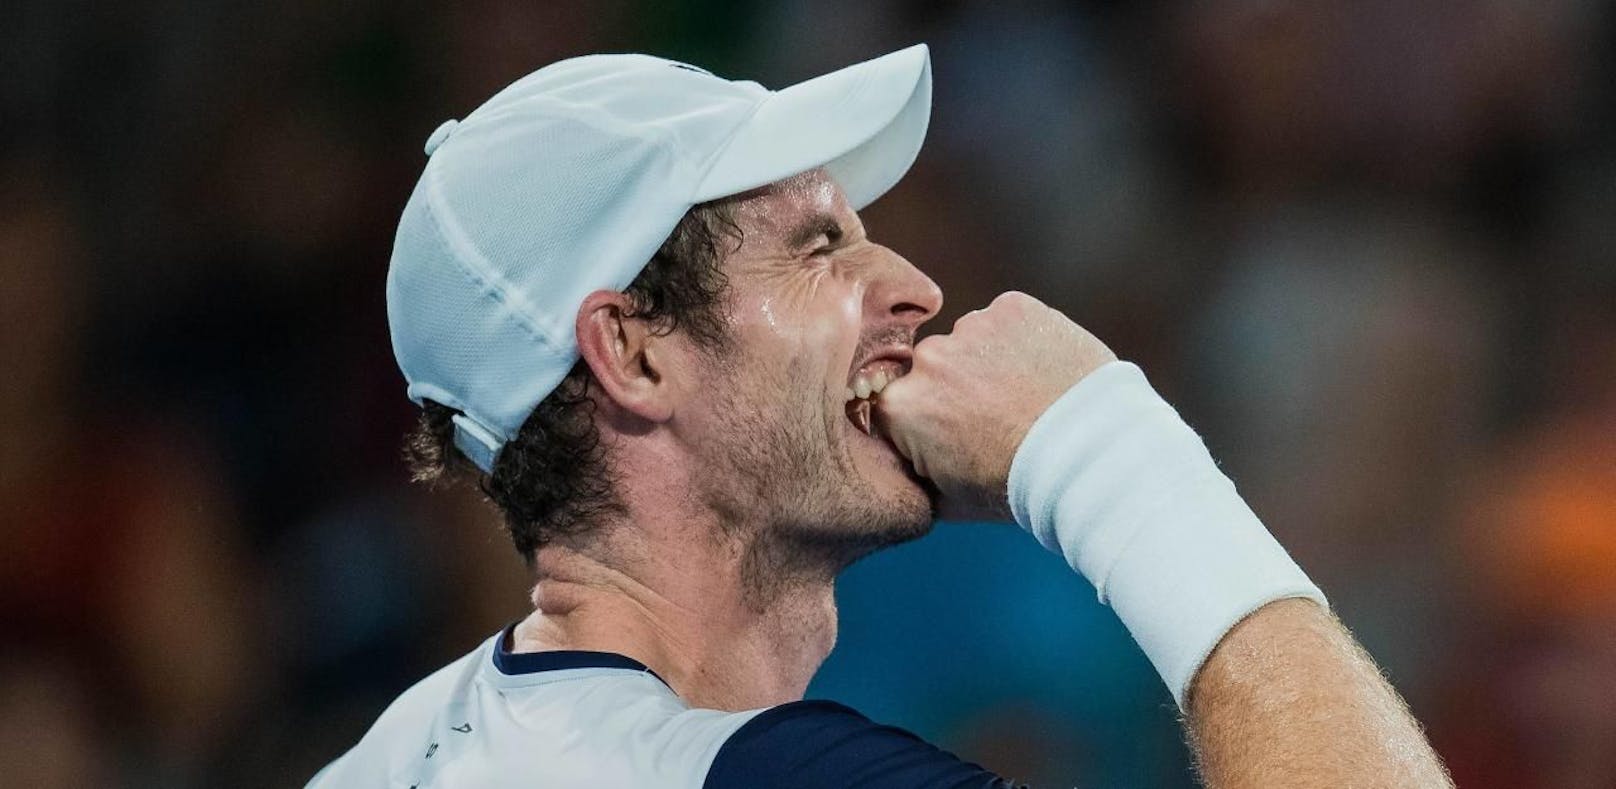 Macht ein "Wunderheiler" Andy Murray wieder fit?